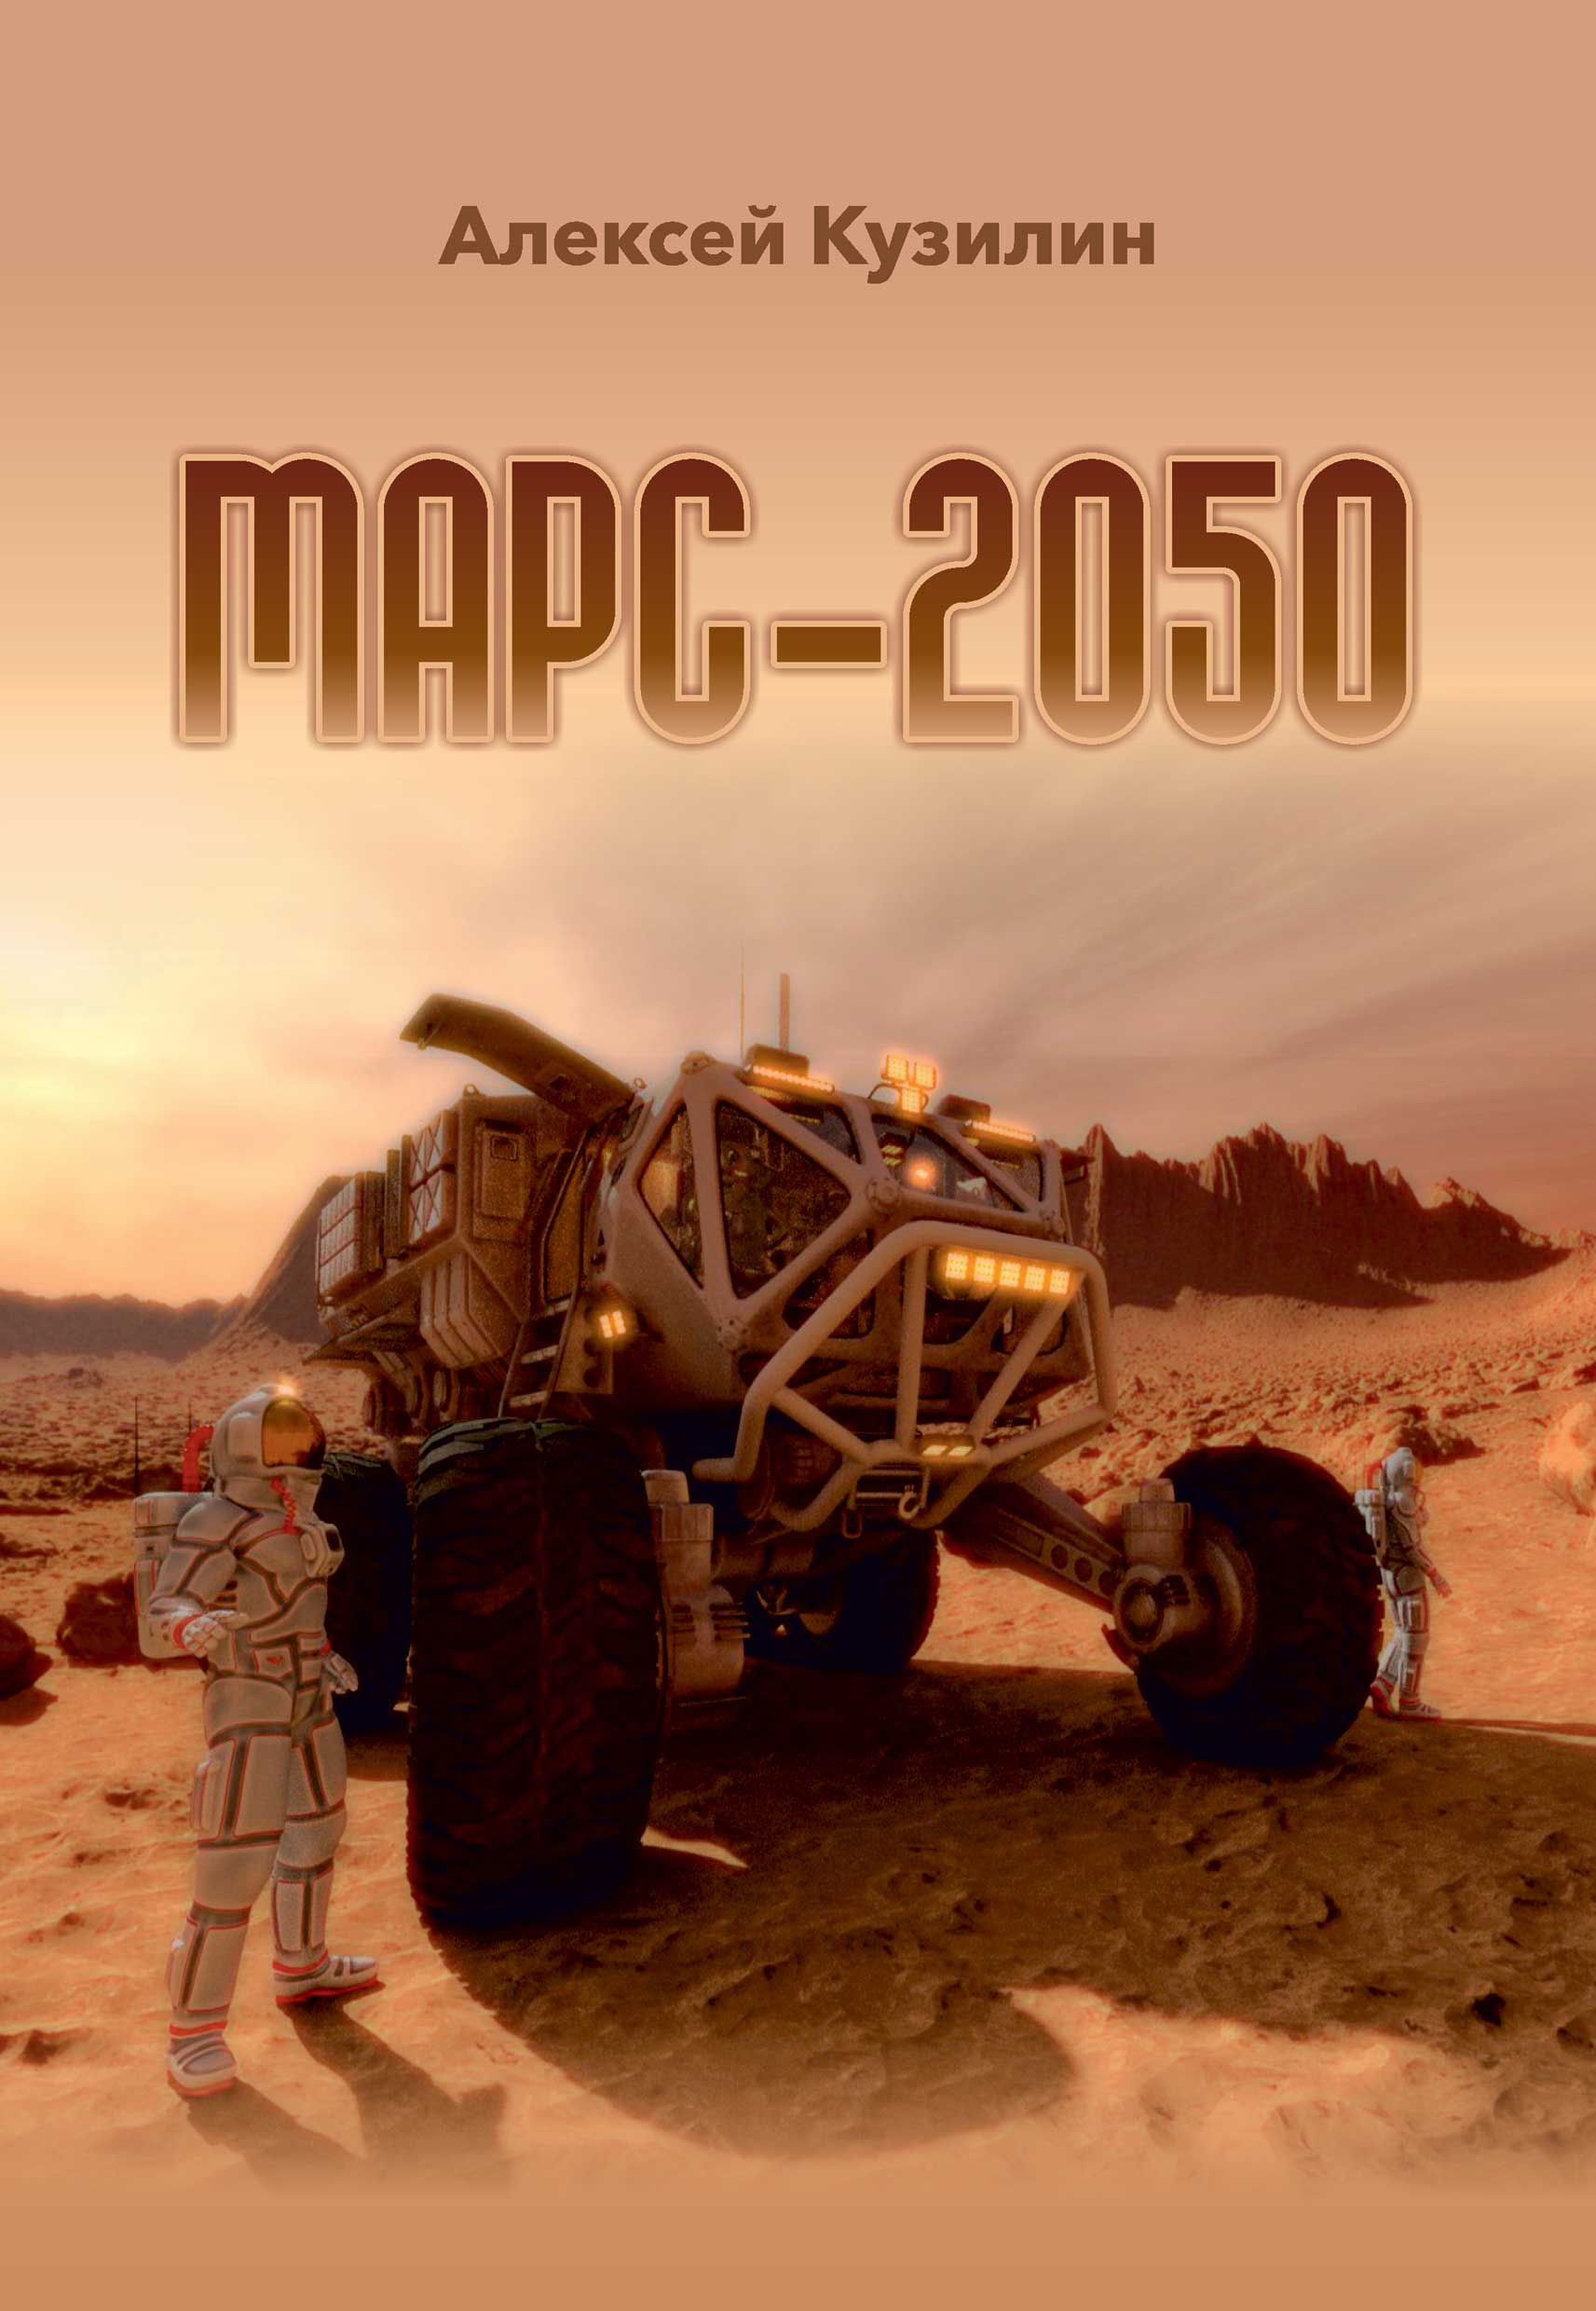 Книга Марс-2050 из серии , созданная Алексей Кузилин, может относится к жанру Научная фантастика, О бизнесе популярно. Стоимость электронной книги Марс-2050 с идентификатором 33174671 составляет 59.90 руб.